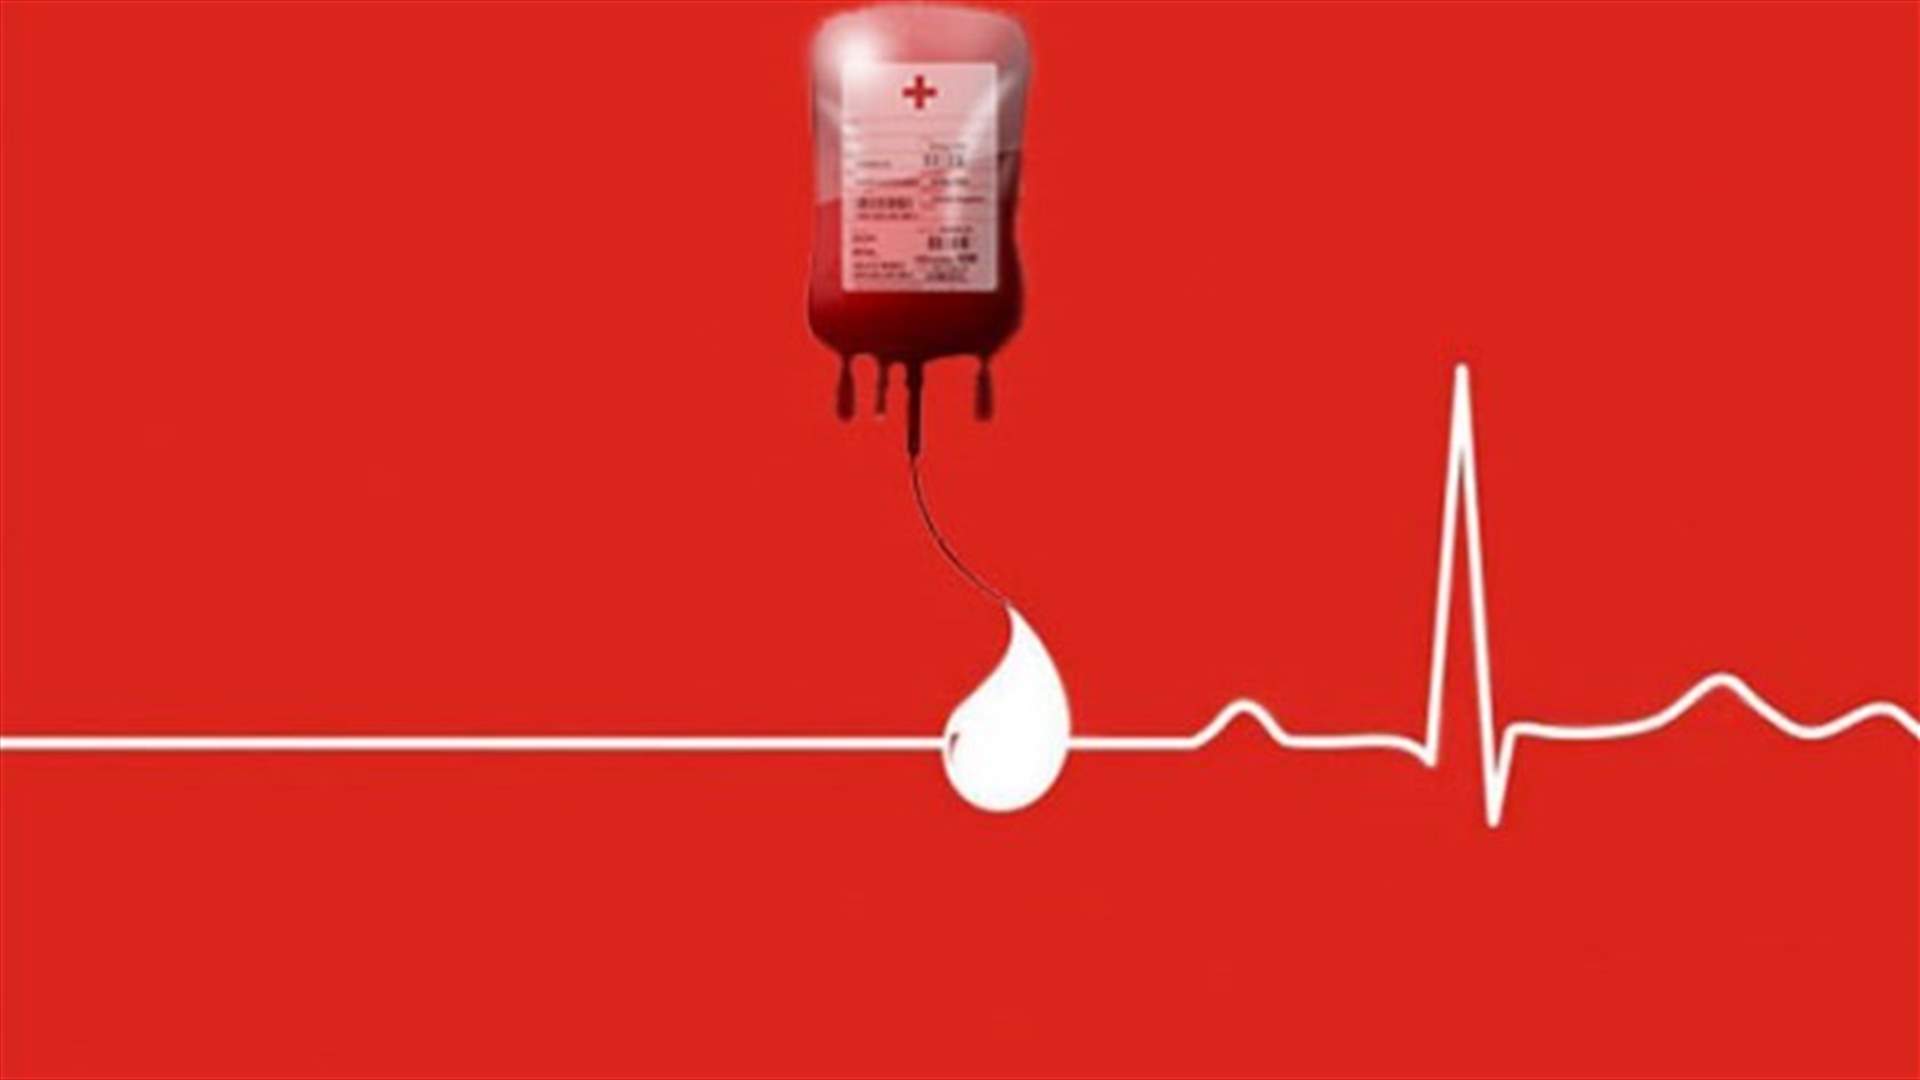 مريض في مستشفى النيني بحاجة ماسة الى دم من فئة O+... للتبرع الاتصال على78990087